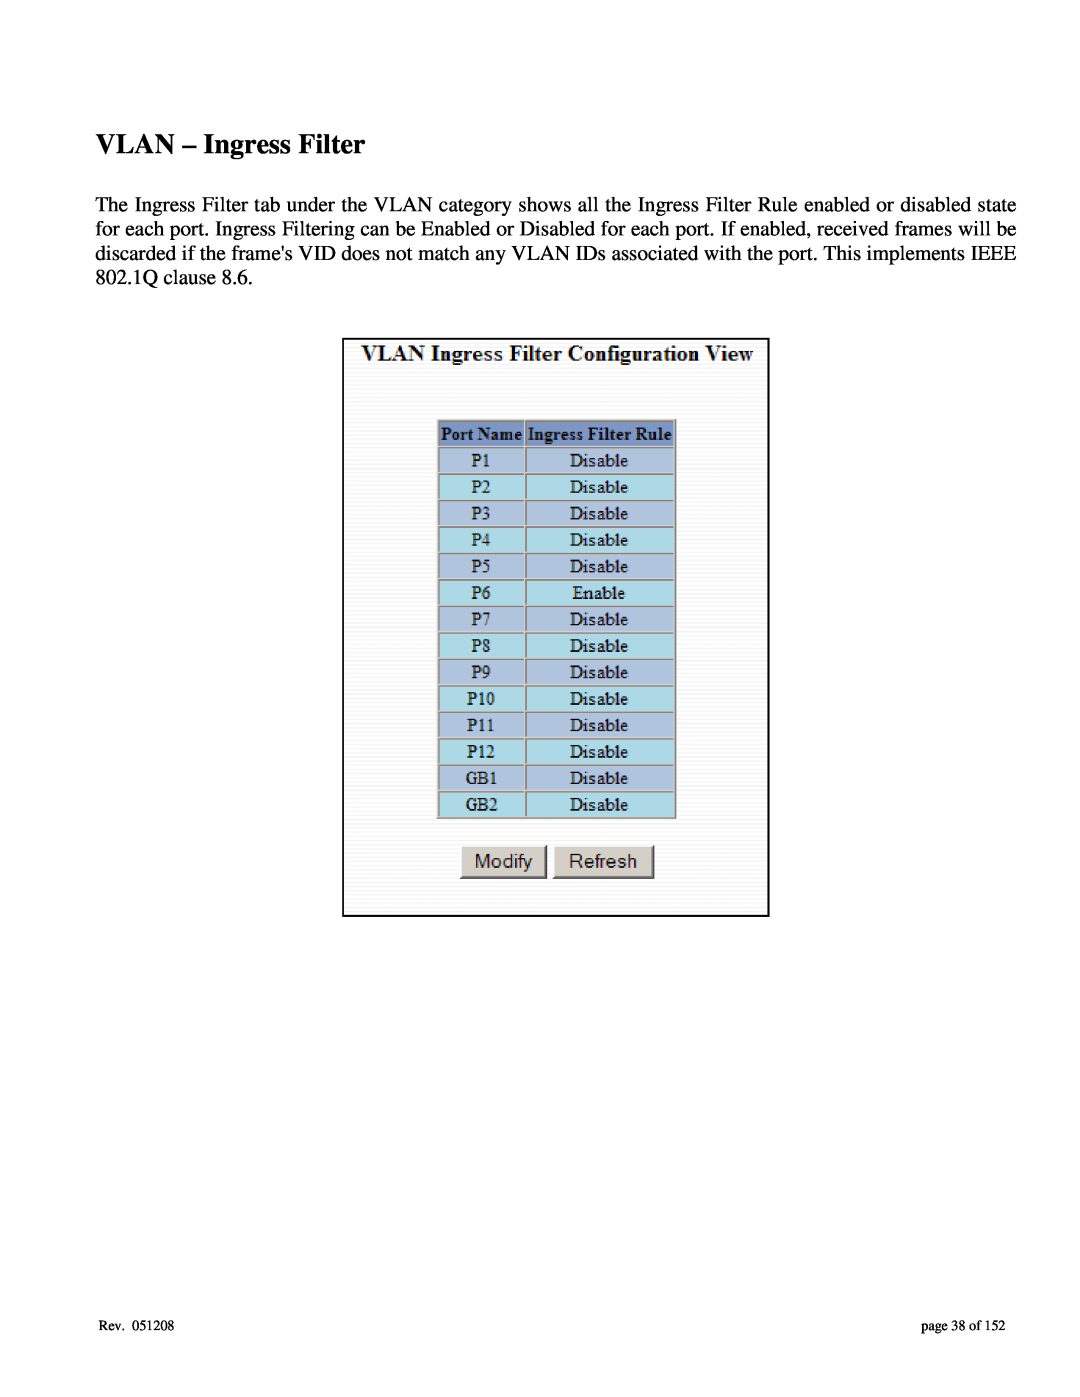 Gigabyte 7014 user manual VLAN - Ingress Filter, page 38 of 